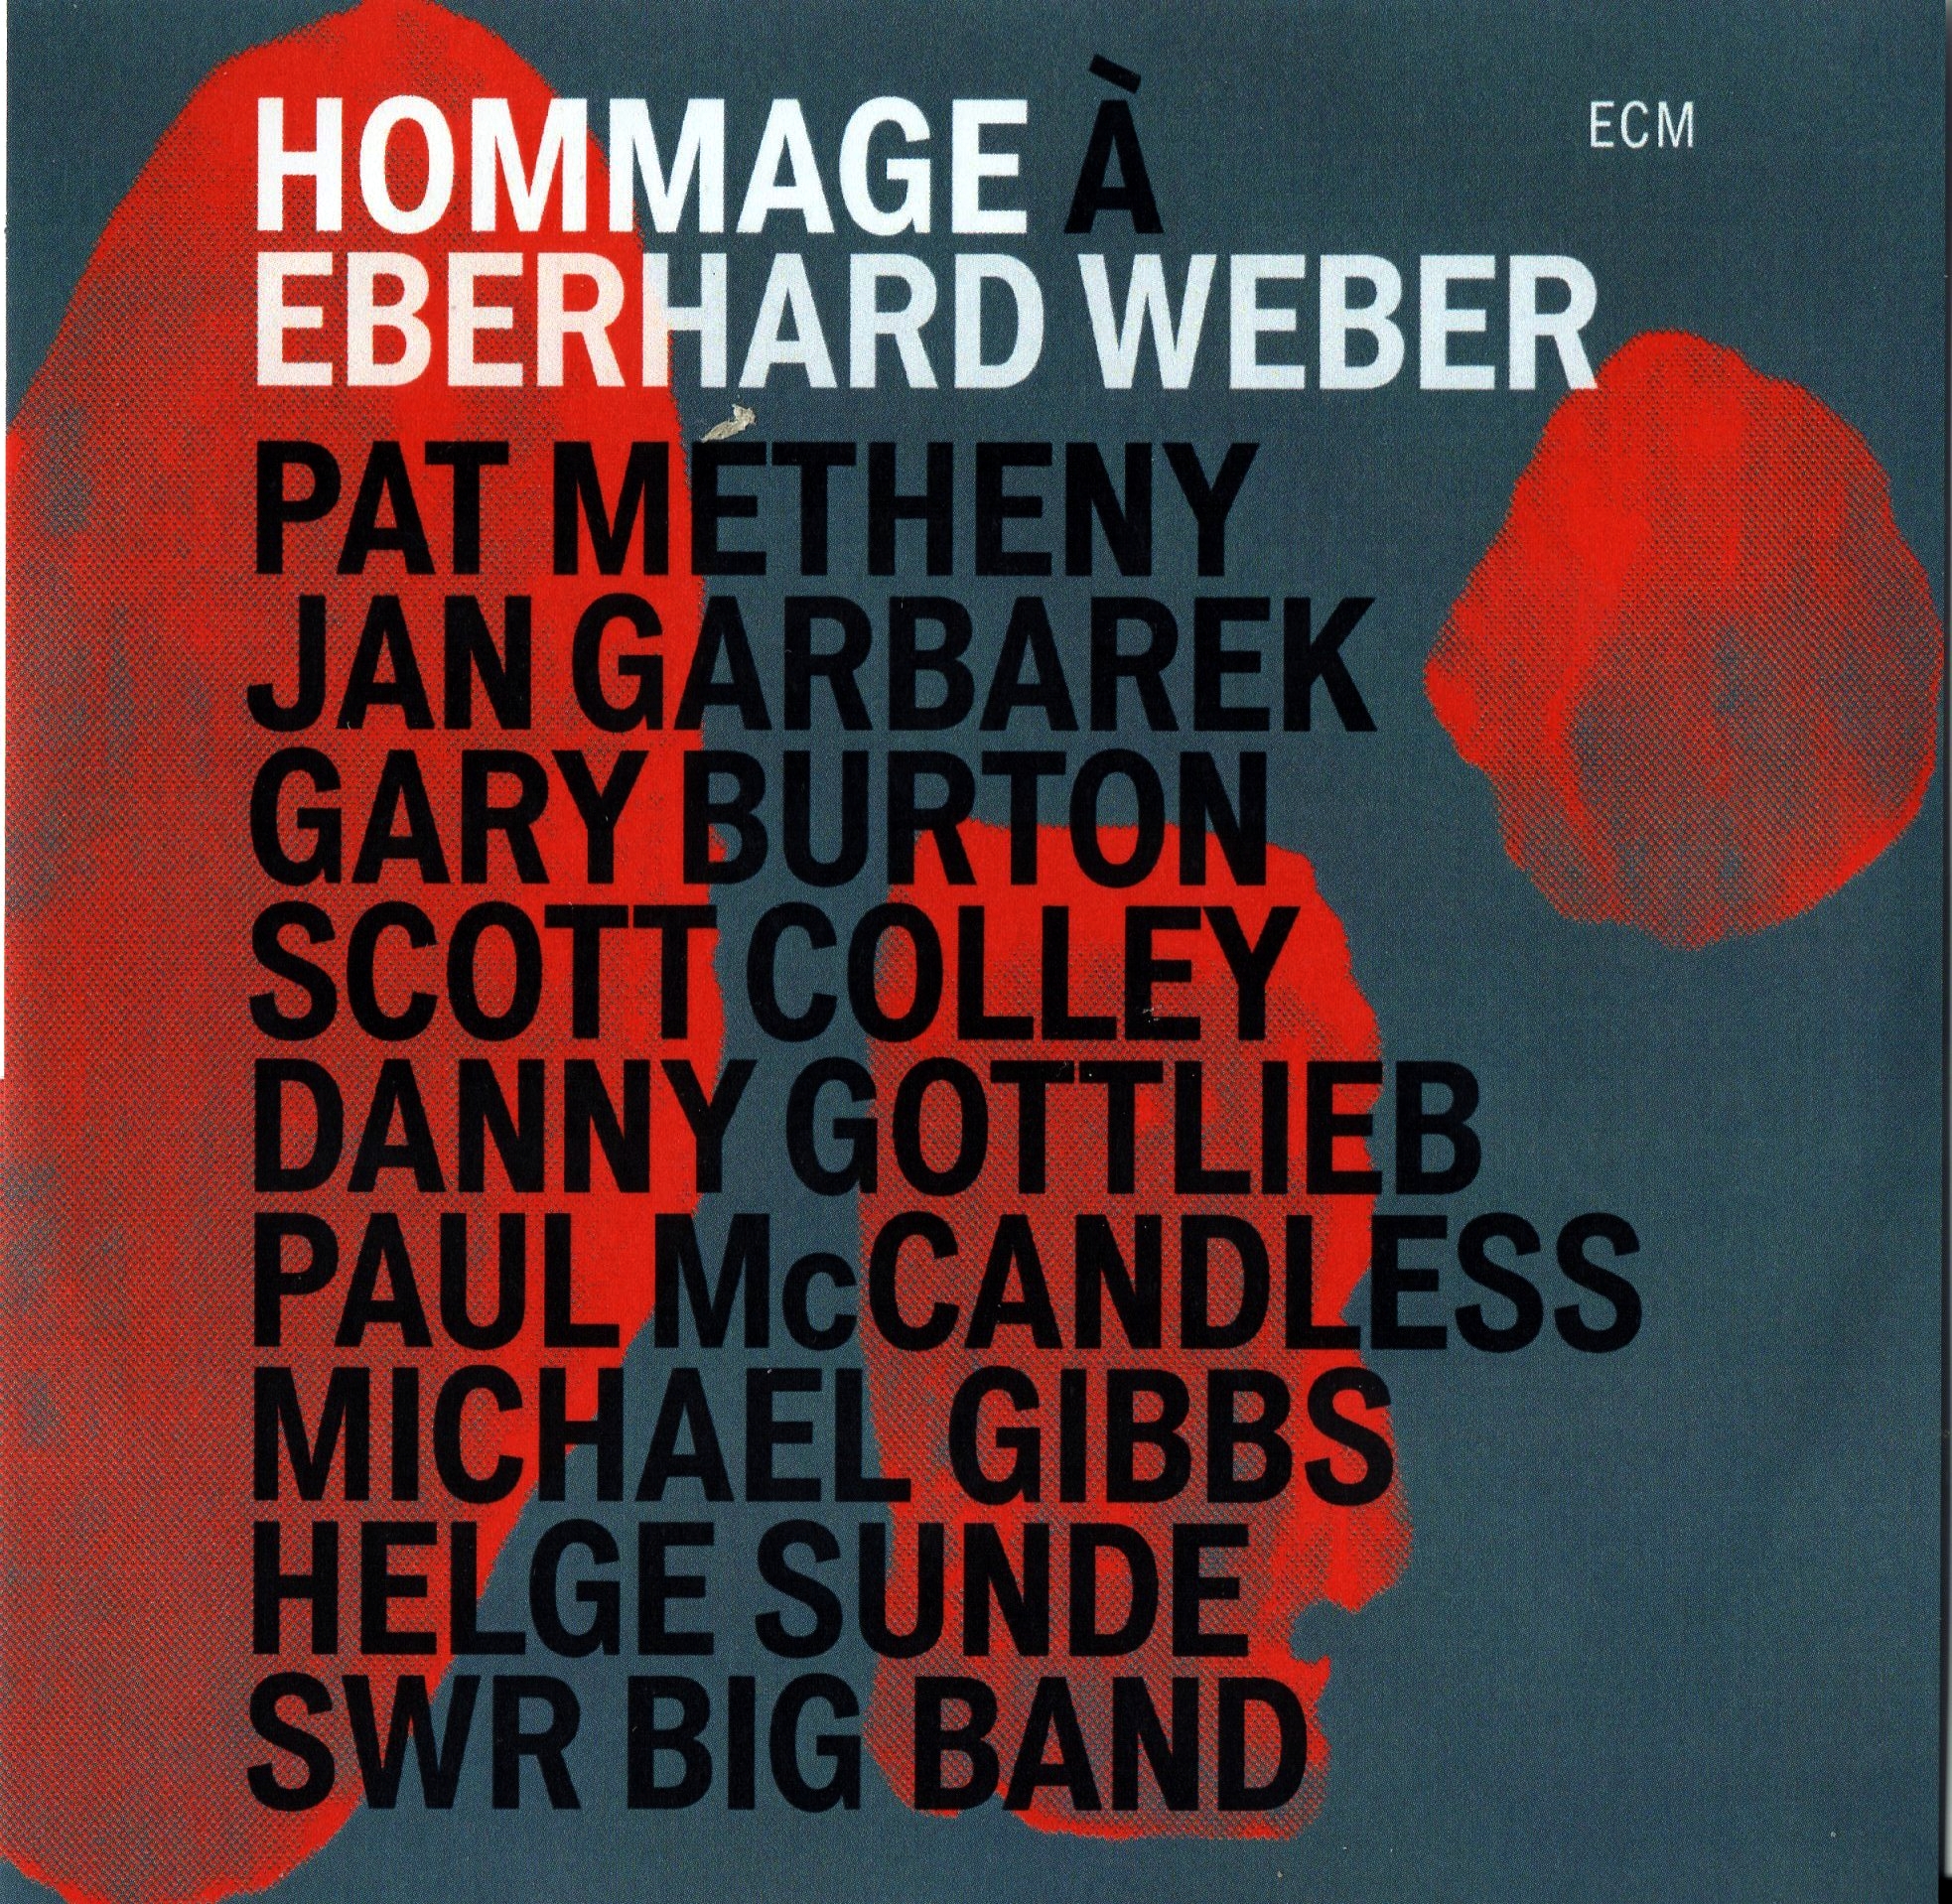 Hommage à Eberhard Weber par un Pat Metheny bien affûté.